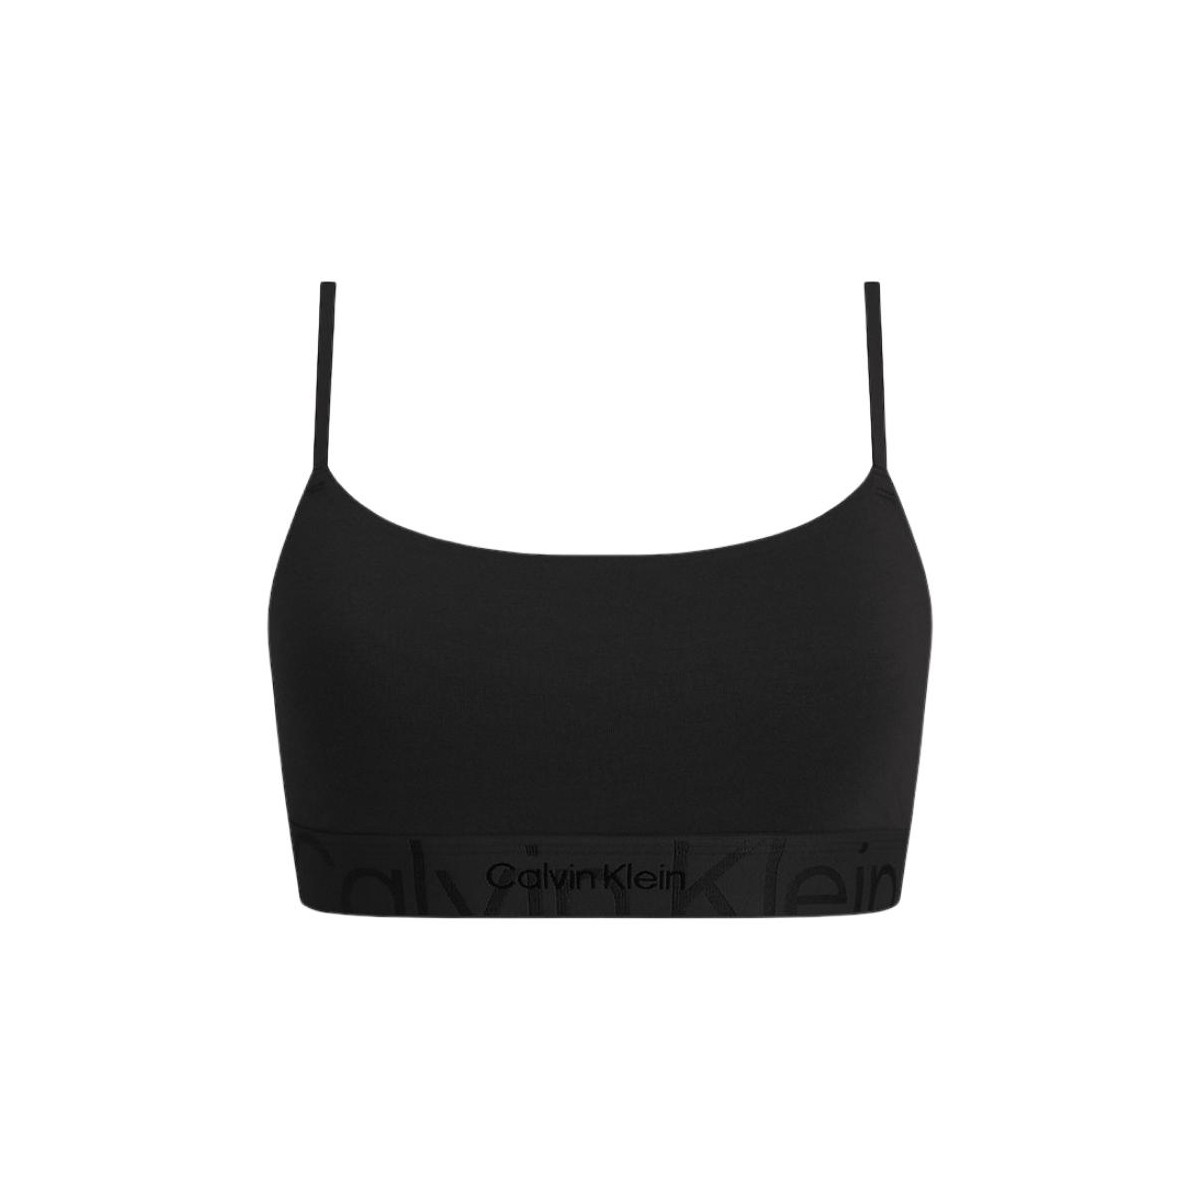 Sous-vêtements Femme Culottes & slips Calvin Klein Jeans Brassiere  Ref 58627 UB1 Noir Noir